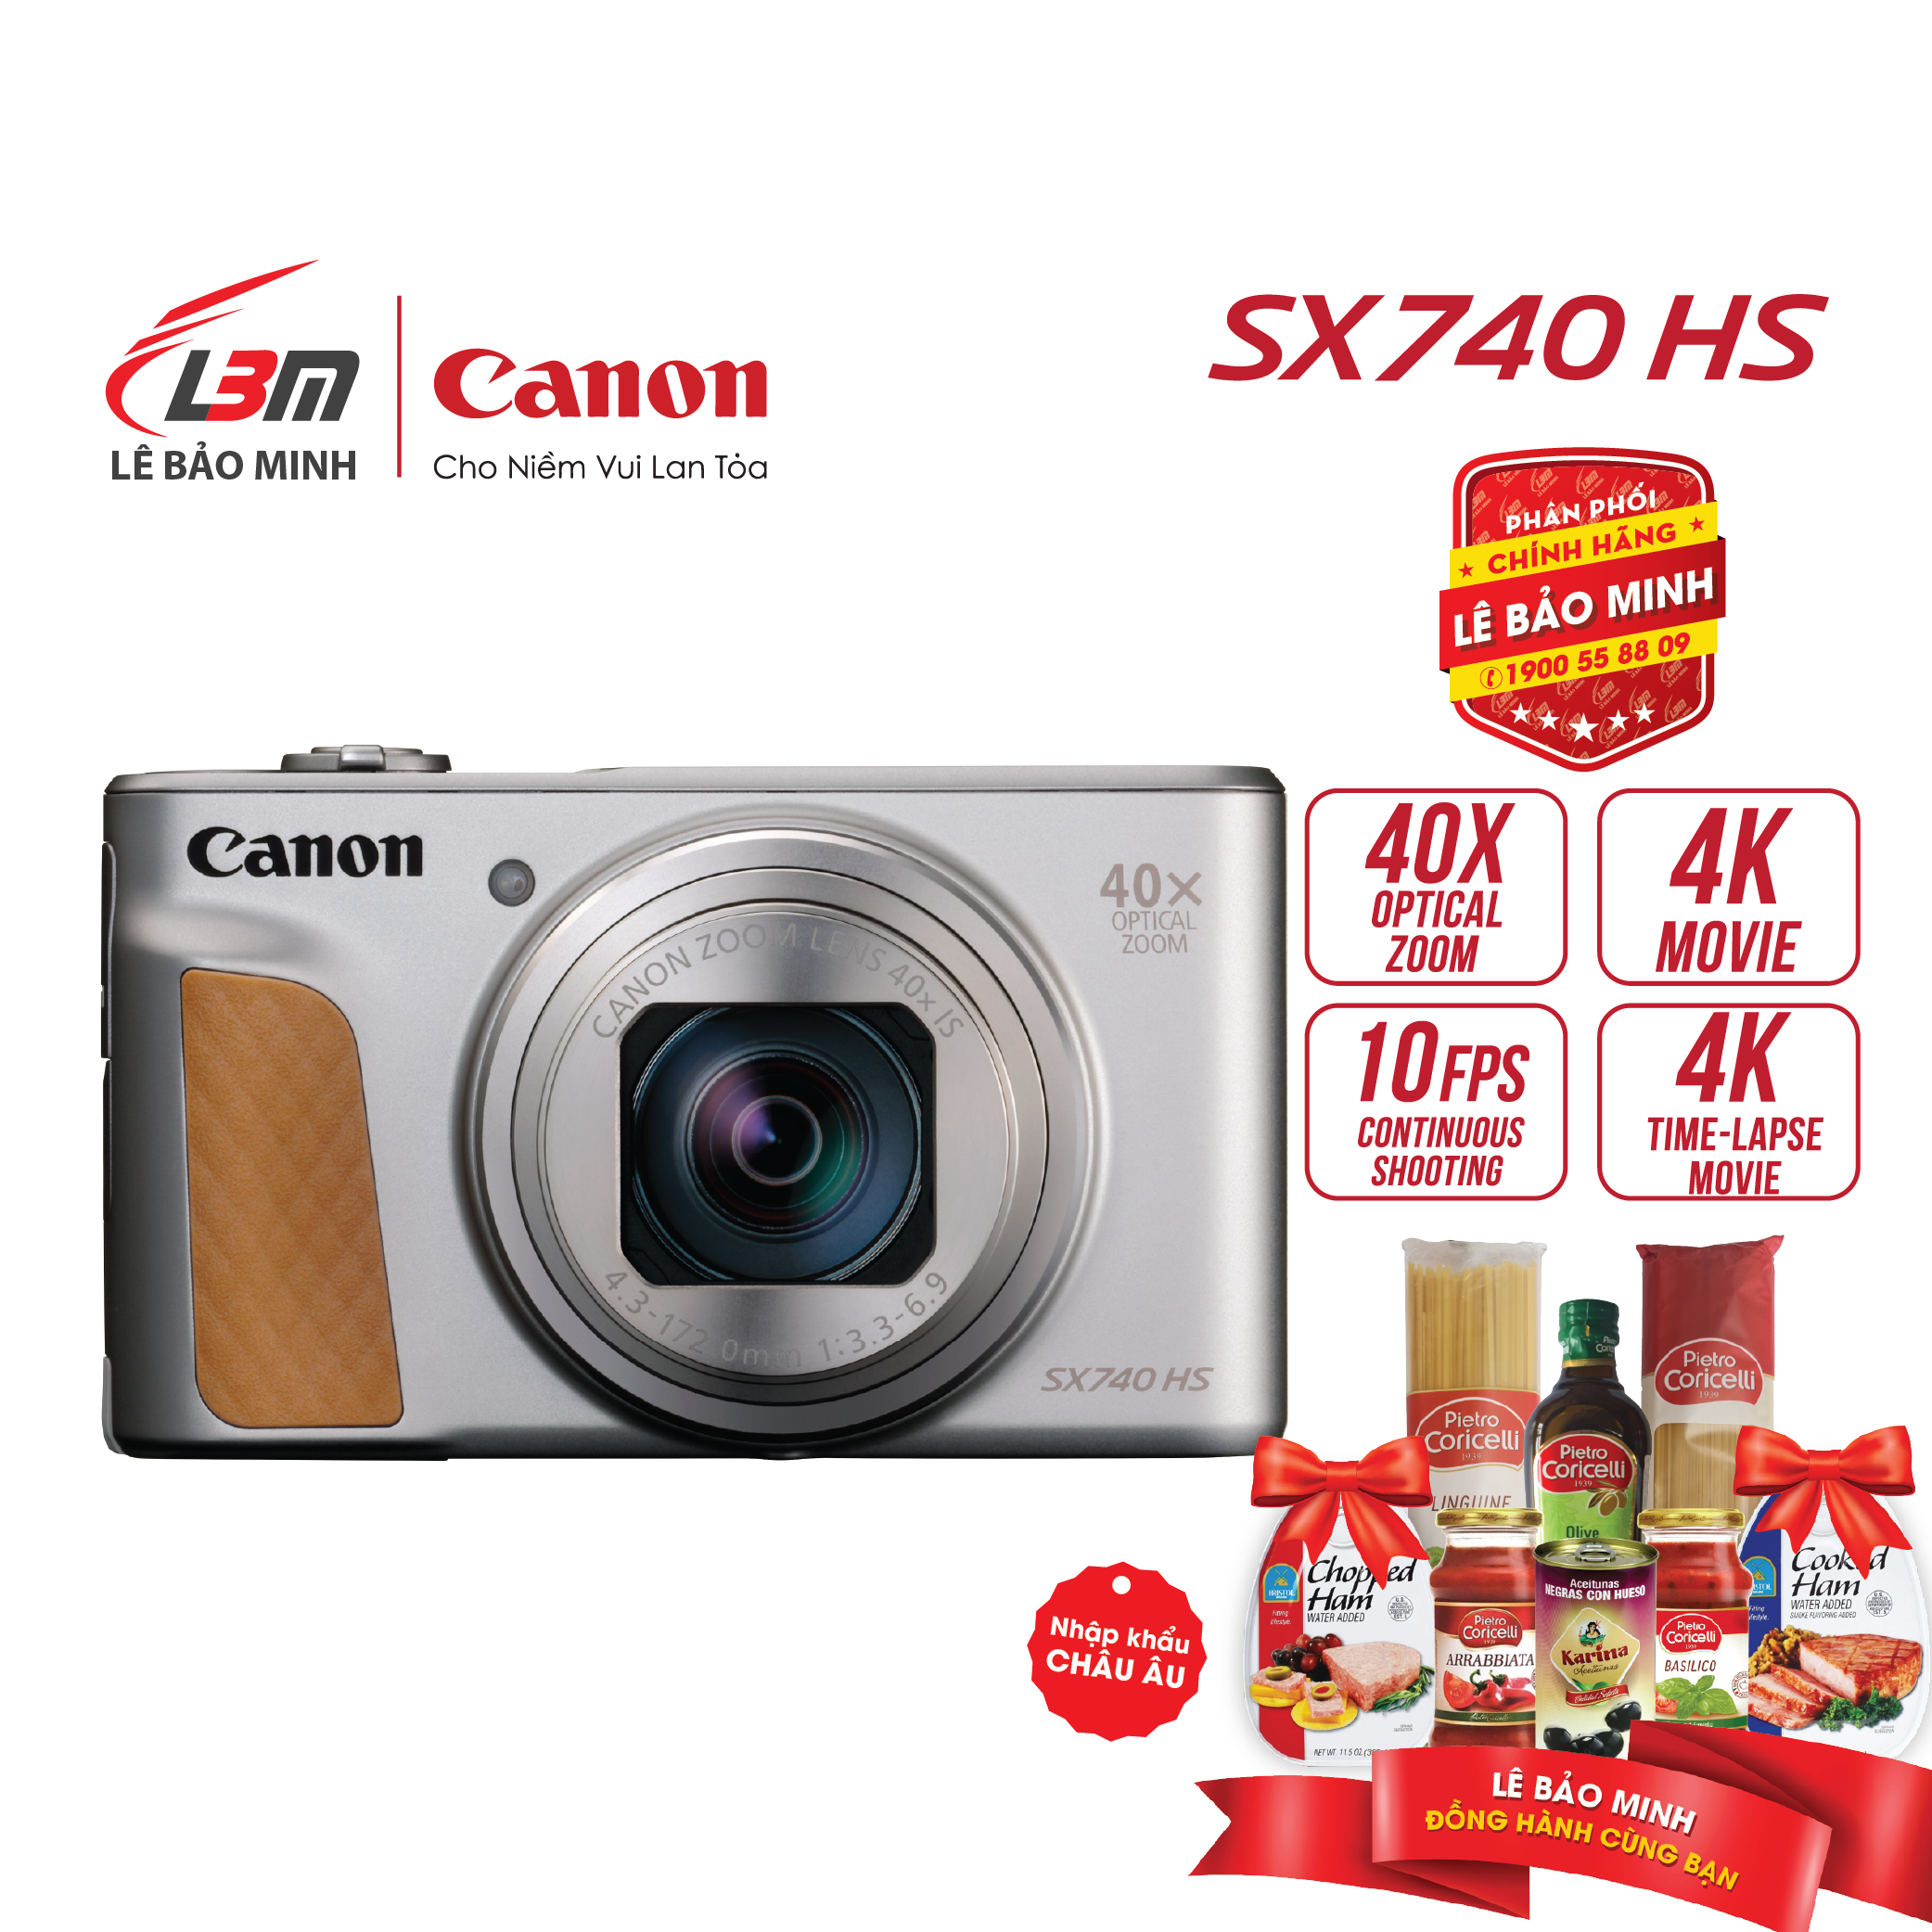 Máy ảnh Canon Powershot SX740 HS - Hàng Chính Hãng Lê Bảo Minh